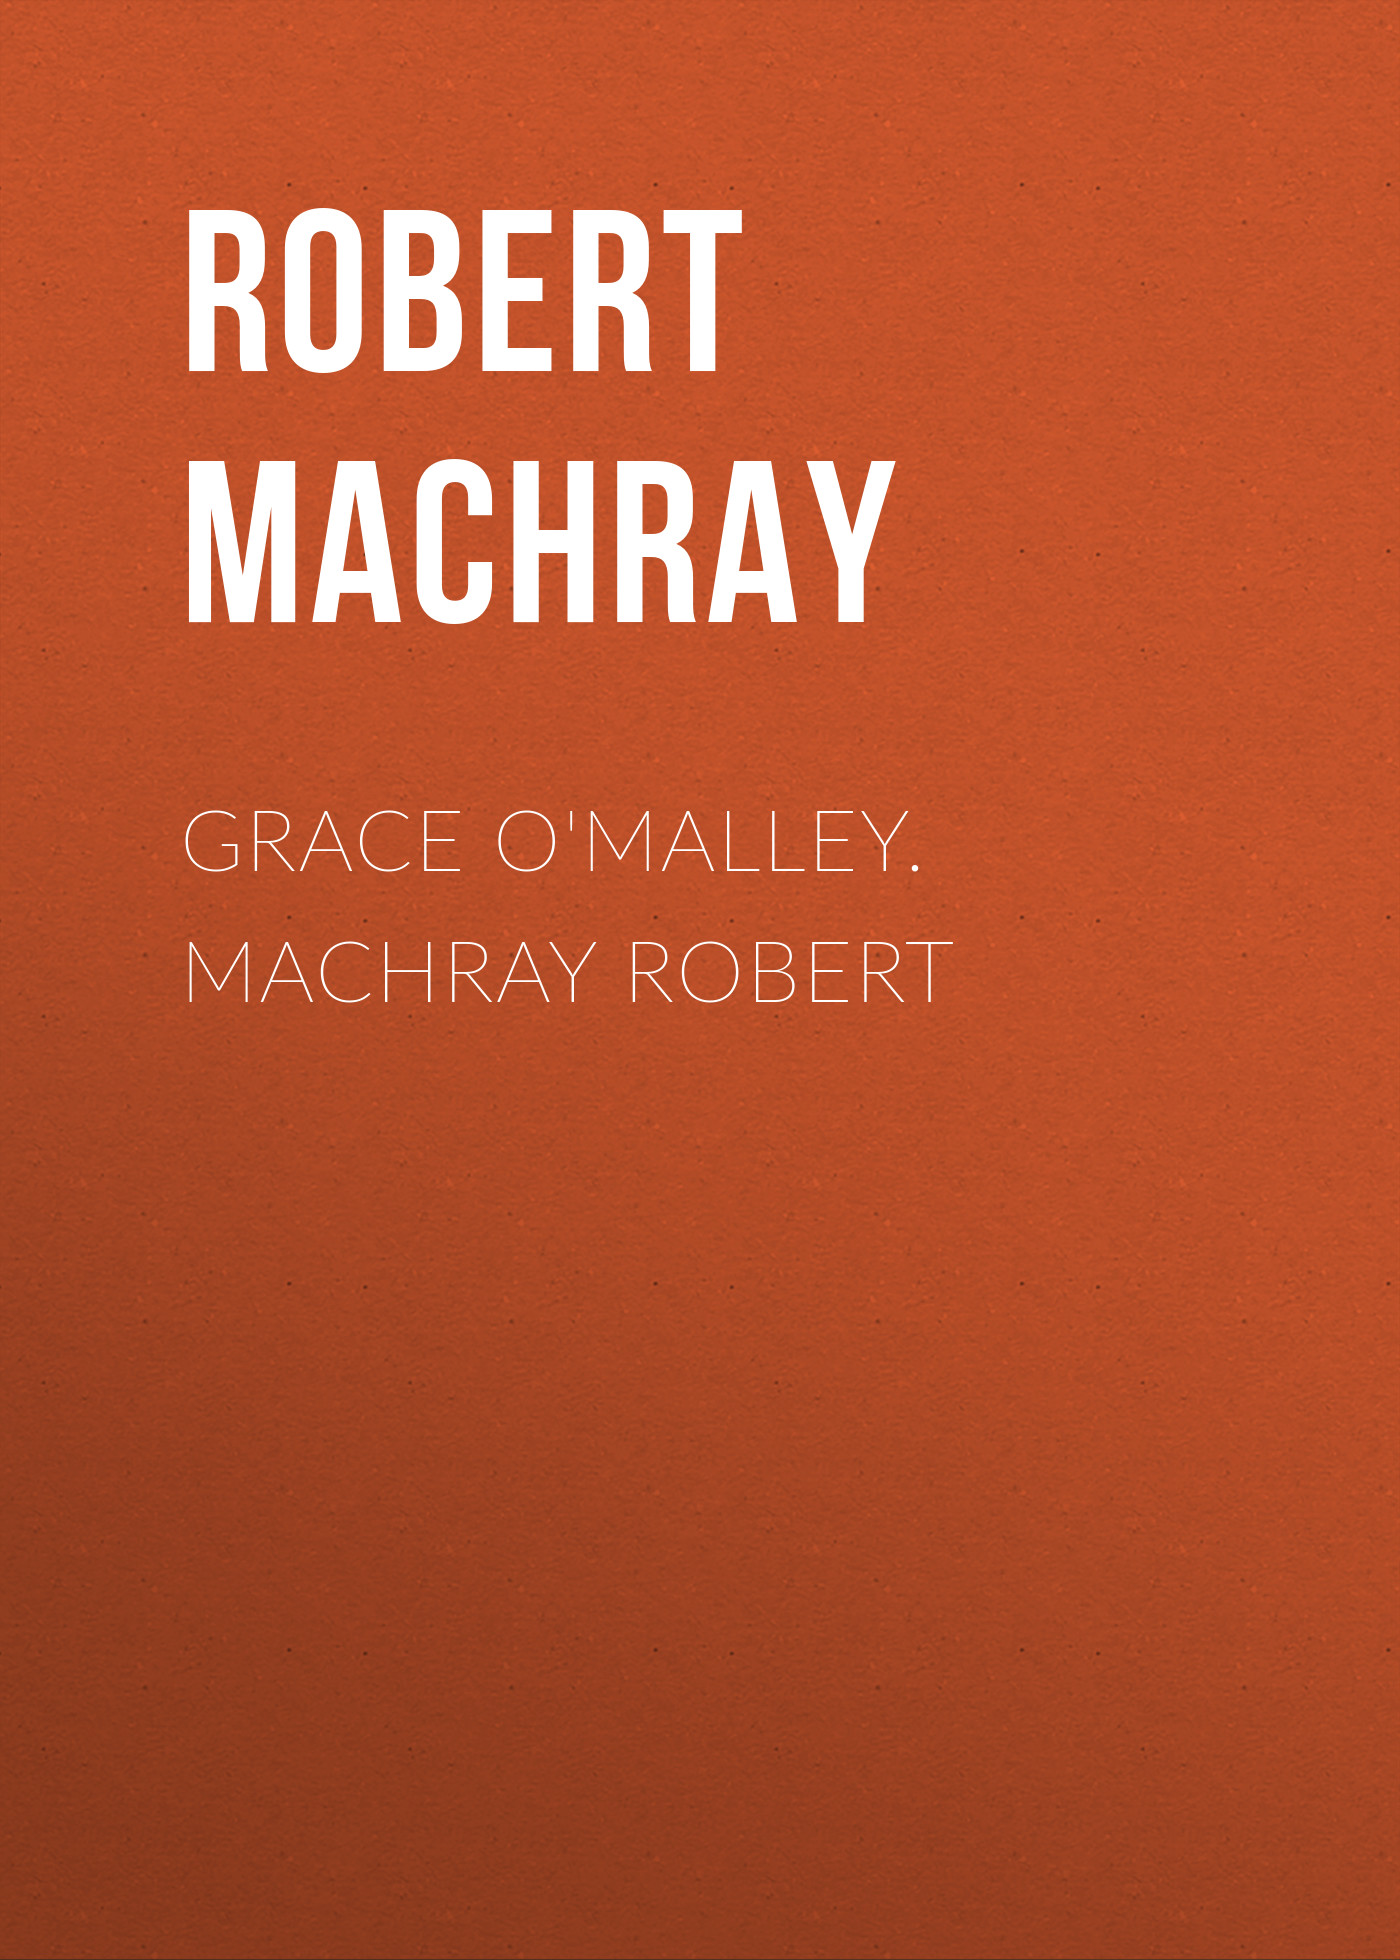 Книга Grace O'Malley. Machray Robert из серии , созданная Robert Machray, может относится к жанру Зарубежная классика, Иностранные языки. Стоимость электронной книги Grace O'Malley. Machray Robert с идентификатором 23156859 составляет 5.99 руб.